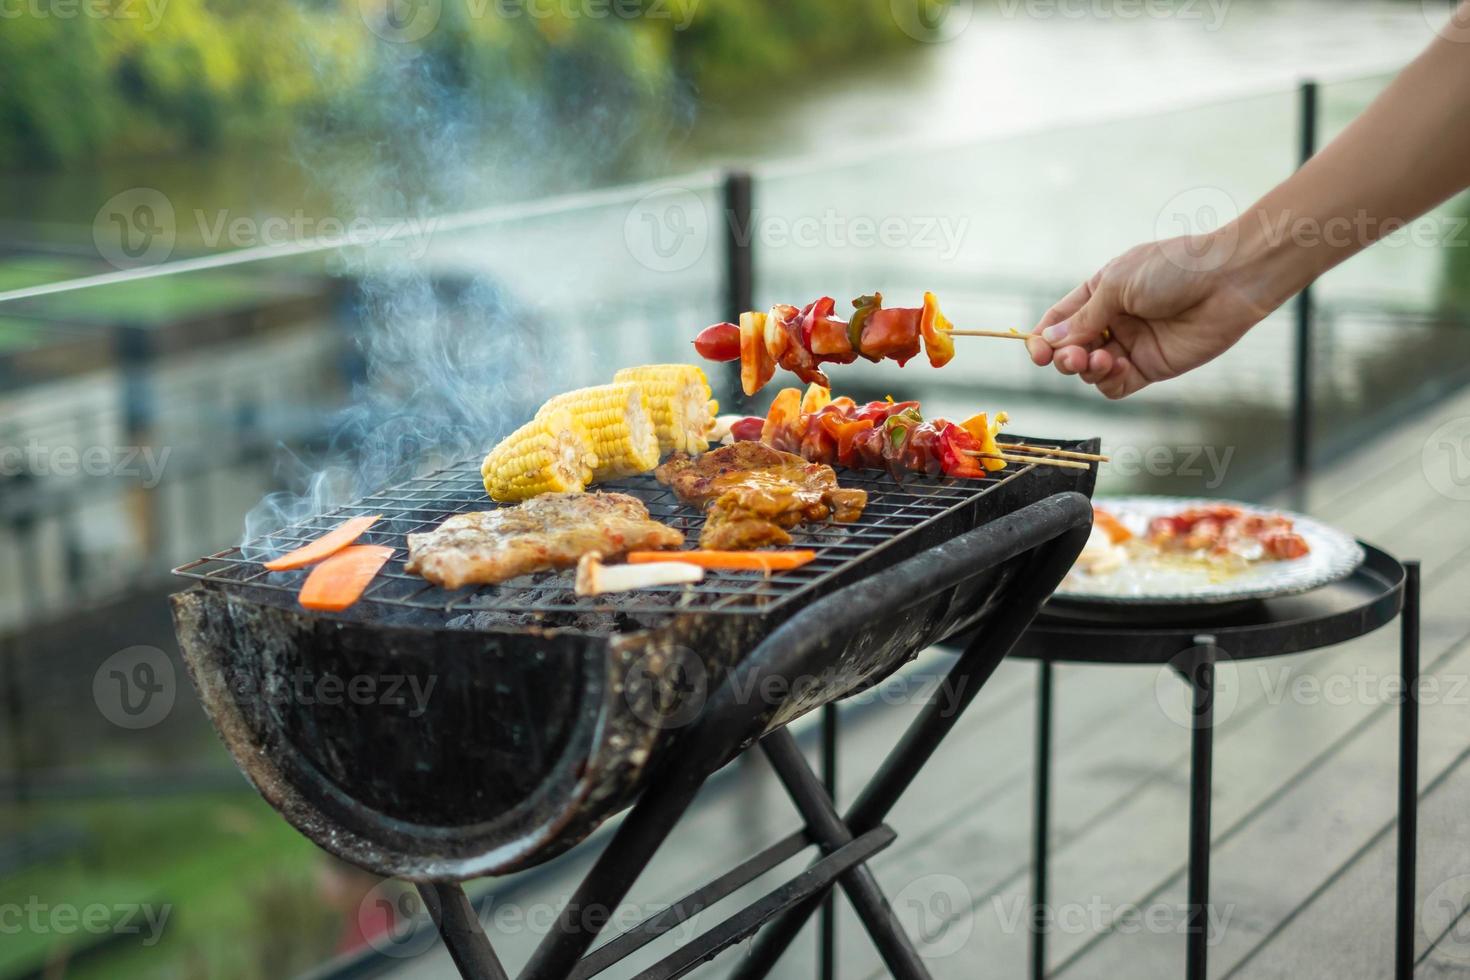 leckeres gegrilltes fleisch mit rauch, grill mit gemüse im freien. grill-, party-, lifestyle- und picknickkonzept foto